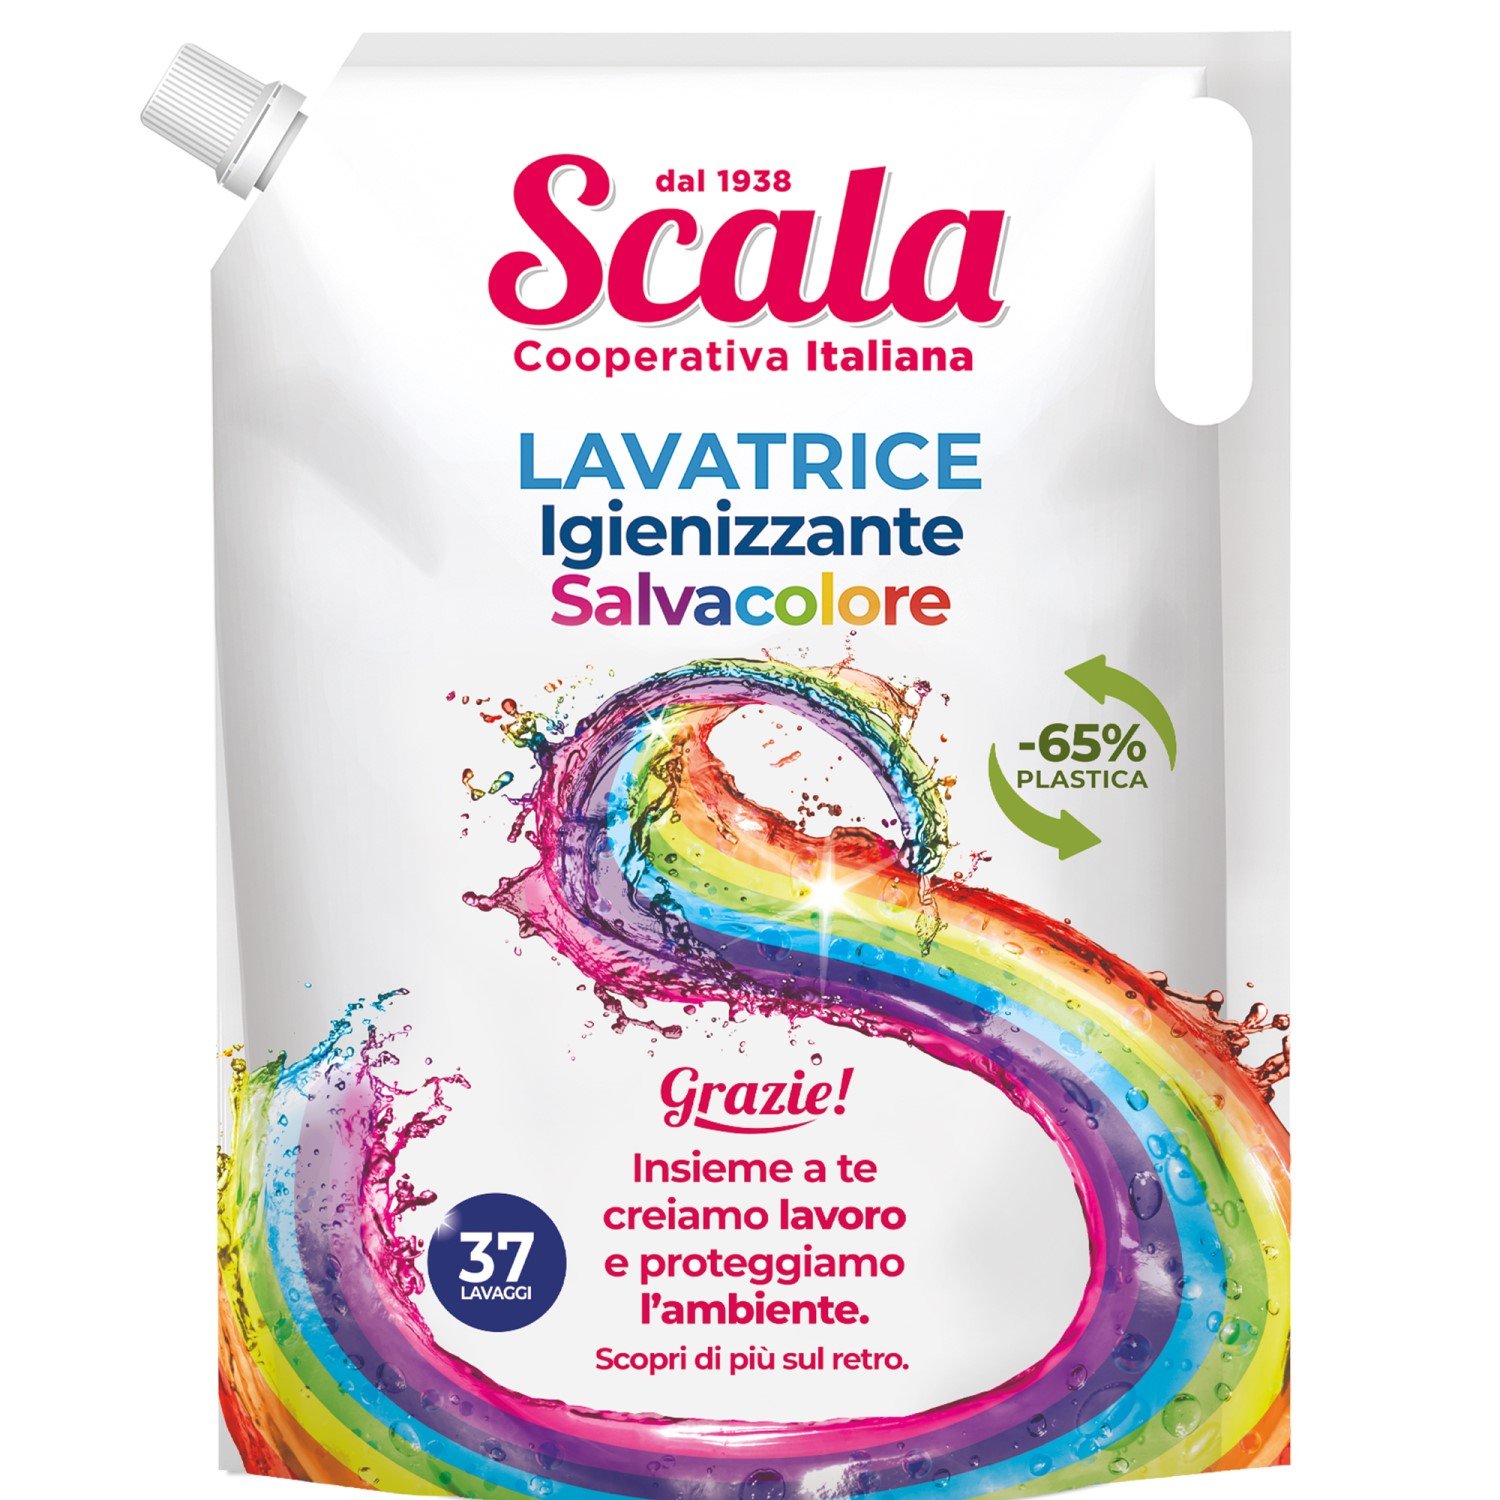 Гель для стирки цветных вещей с фиксацией цвета Scala Lavatrice Salvacolore дойпак 1.5 л - фото 1